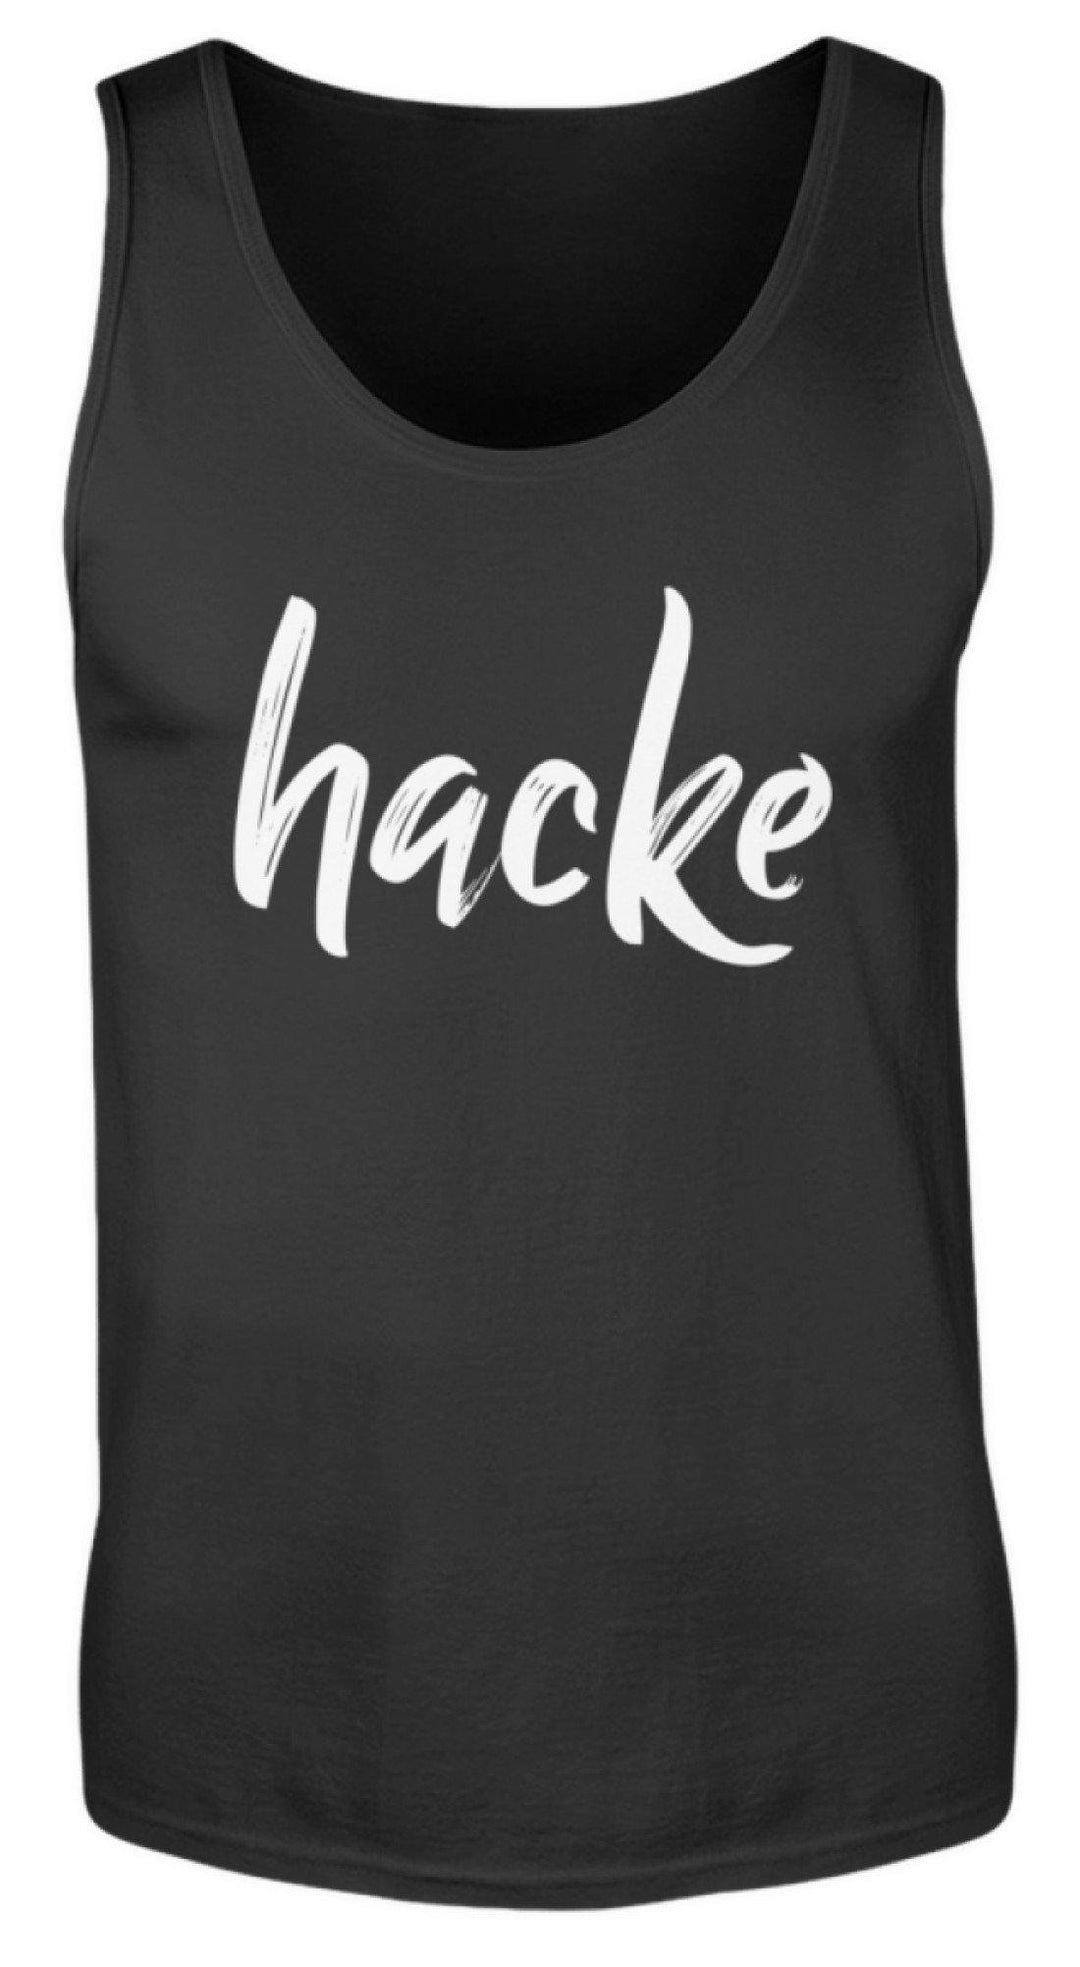 hacke Shirt  - Herren Tanktop - Words on Shirts Sag es mit dem Mittelfinger Shirts Hoodies Sweatshirt Taschen Gymsack Spruch Sprüche Statement